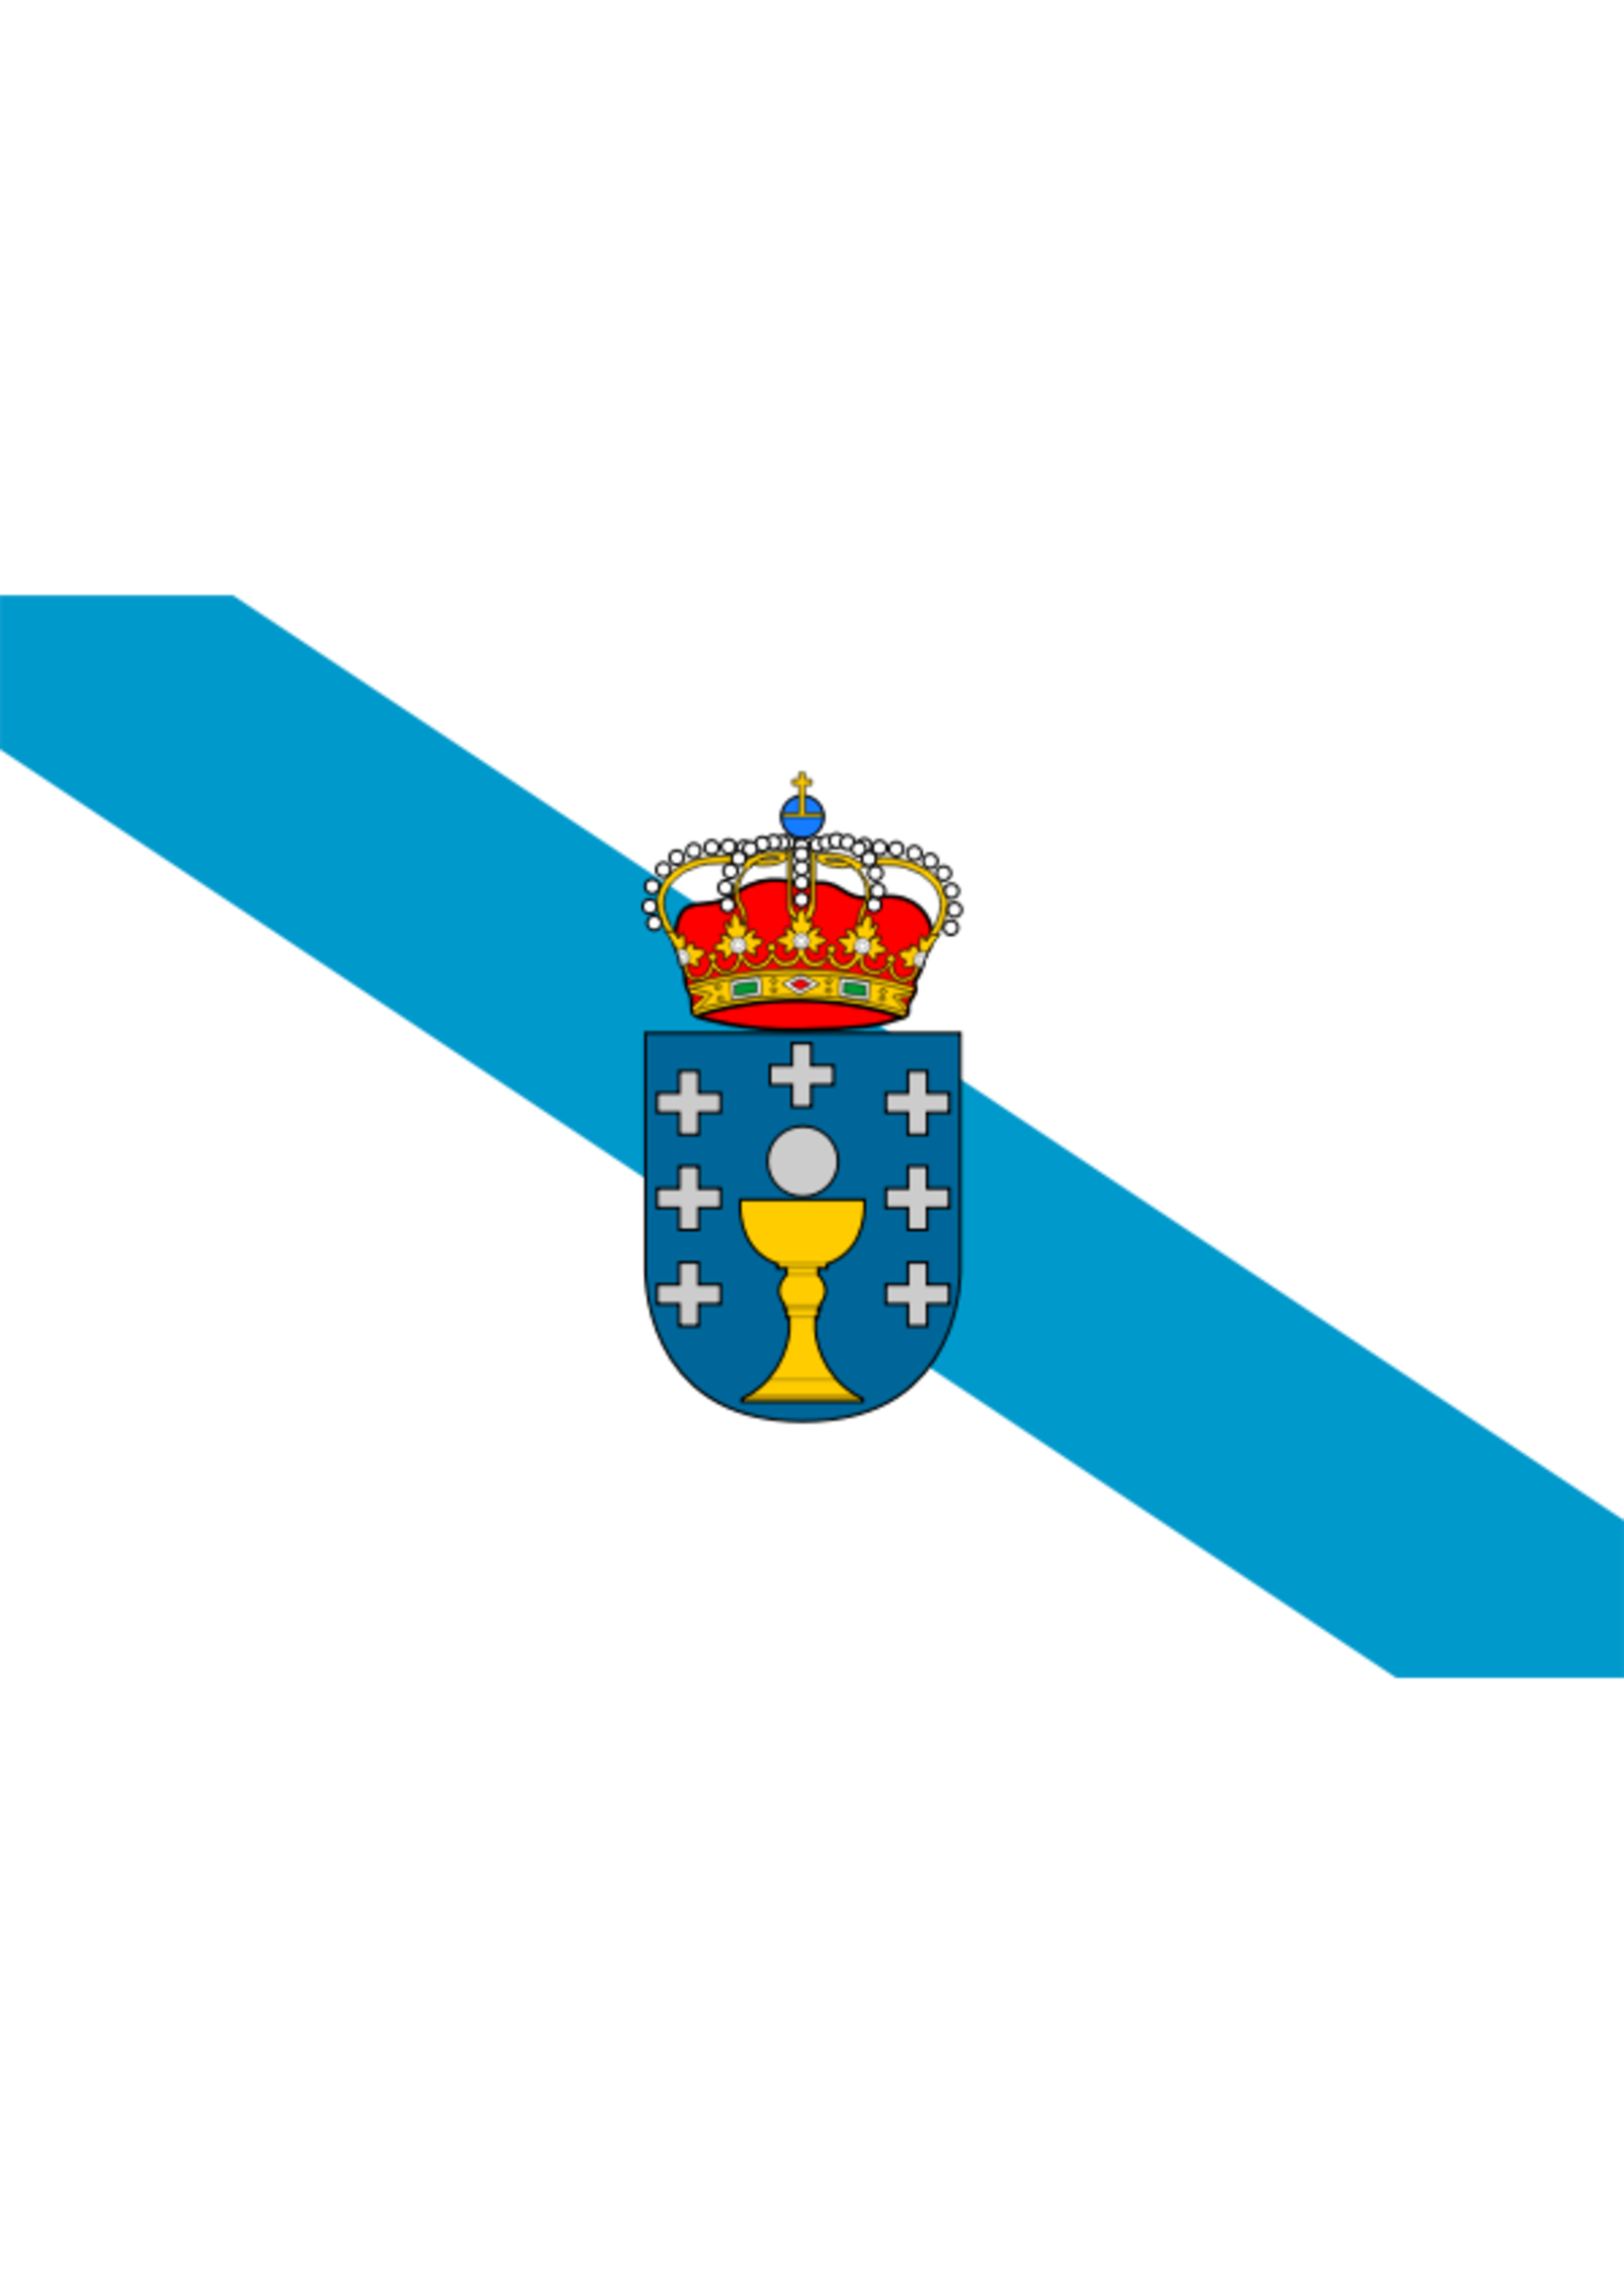 Flag Galicia